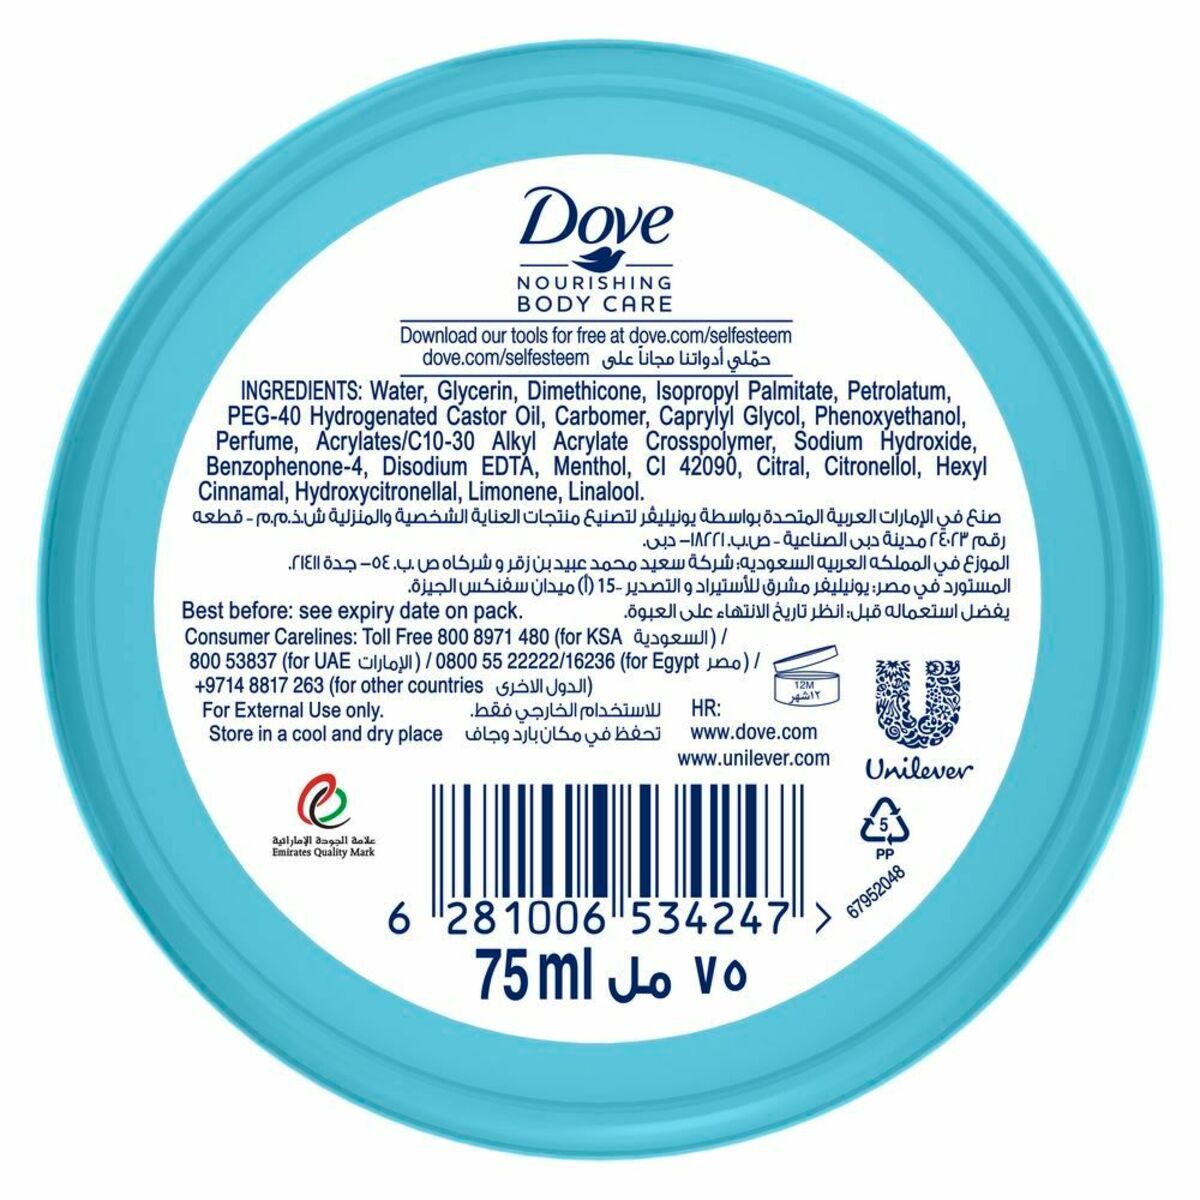 Dove Cooling gel Cream Daiquiri 75 ml